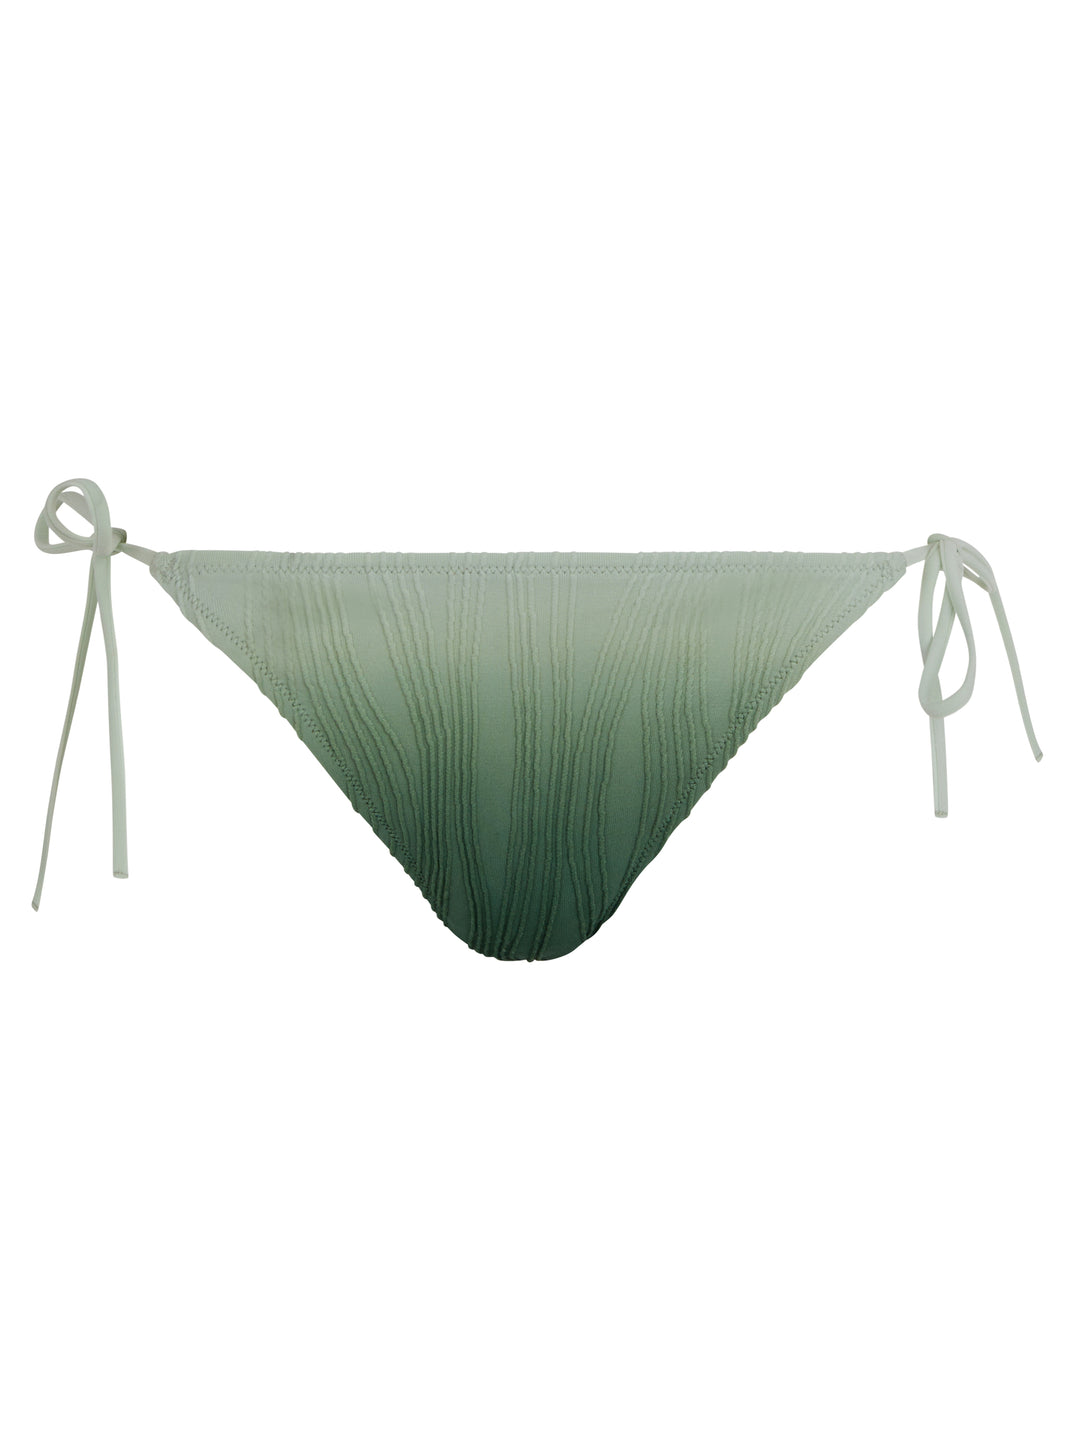 Chantelle Swimwear - Купальник одного размера, зеленый с завязками и краской